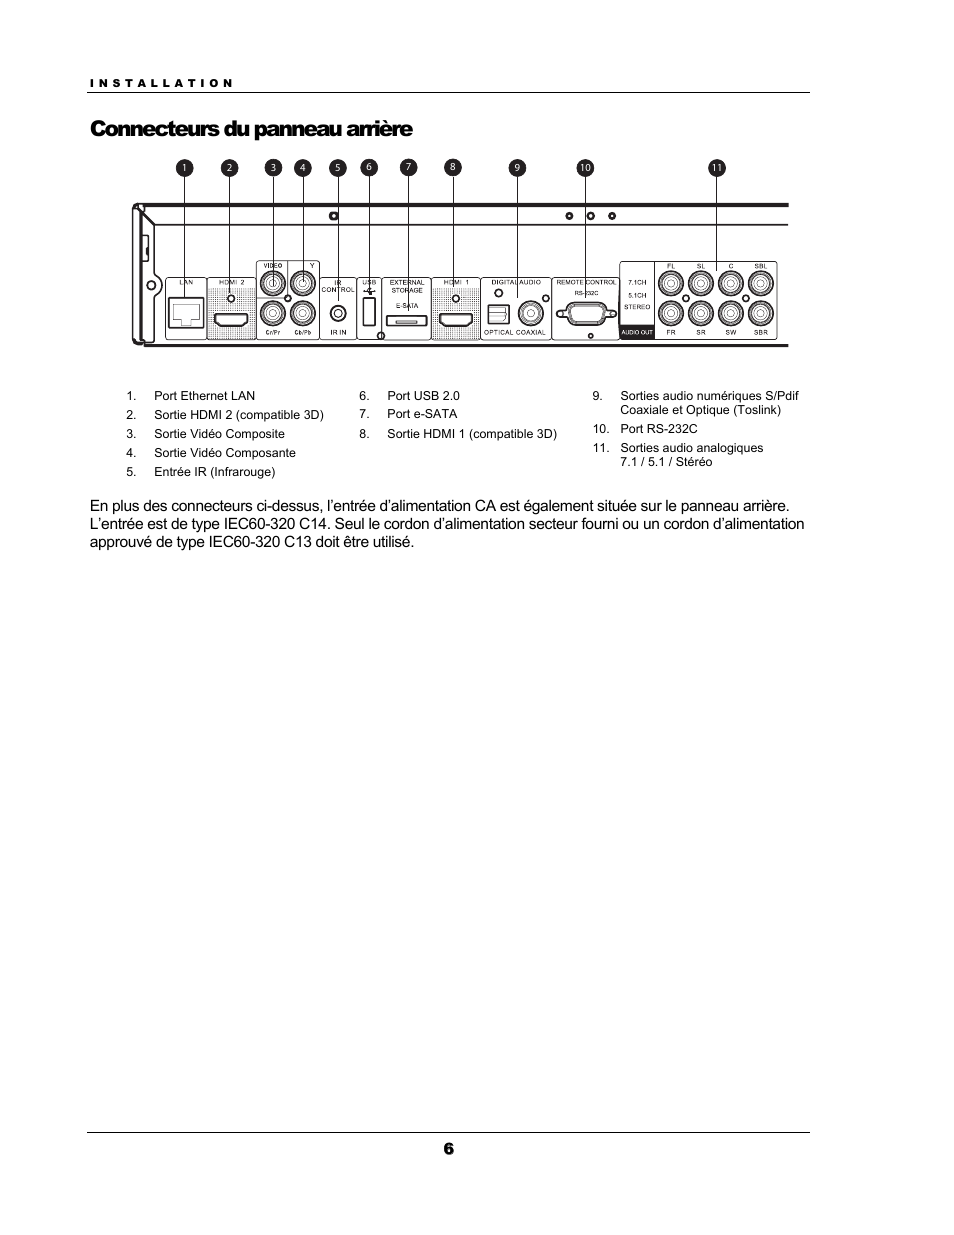 Connecteurs du panneau arrière | Oppo BDP-93EU Manuel d'utilisation | Page 12 / 92